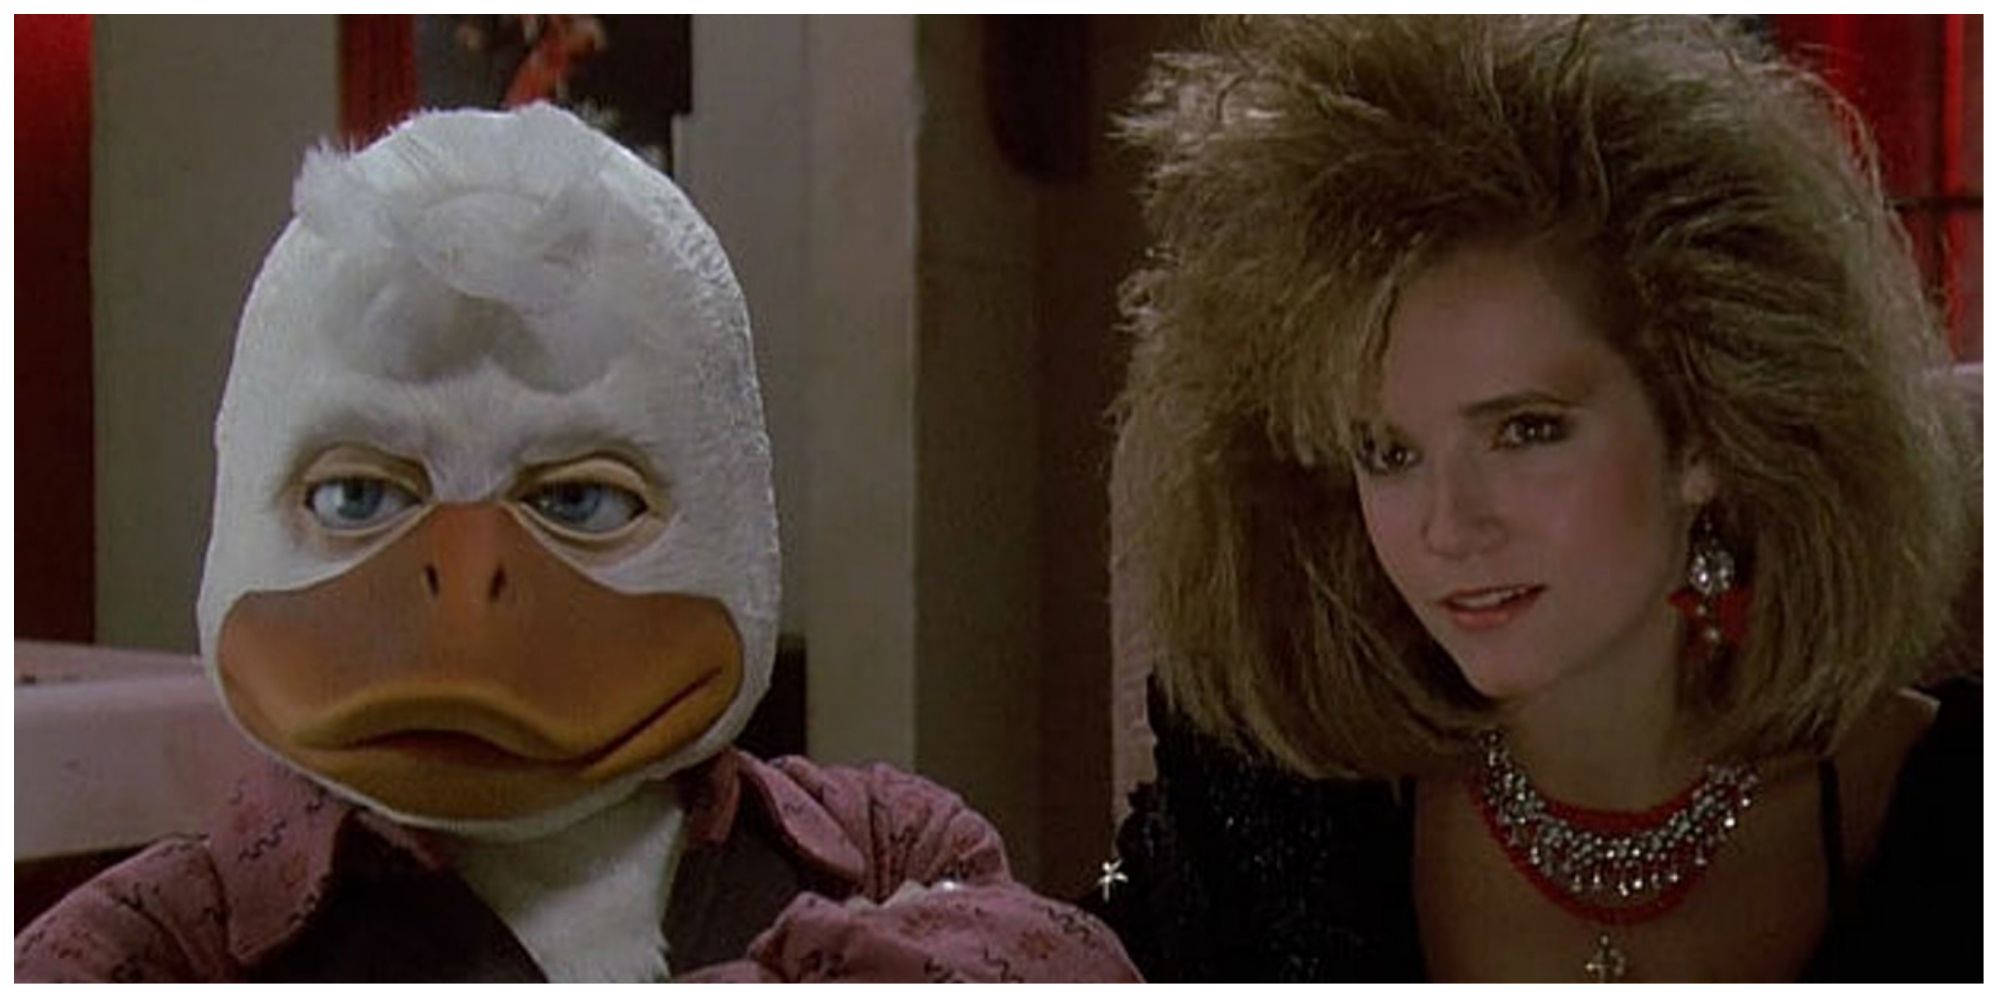 Howard the Duck in Lucas' Howard the Duck (1986)